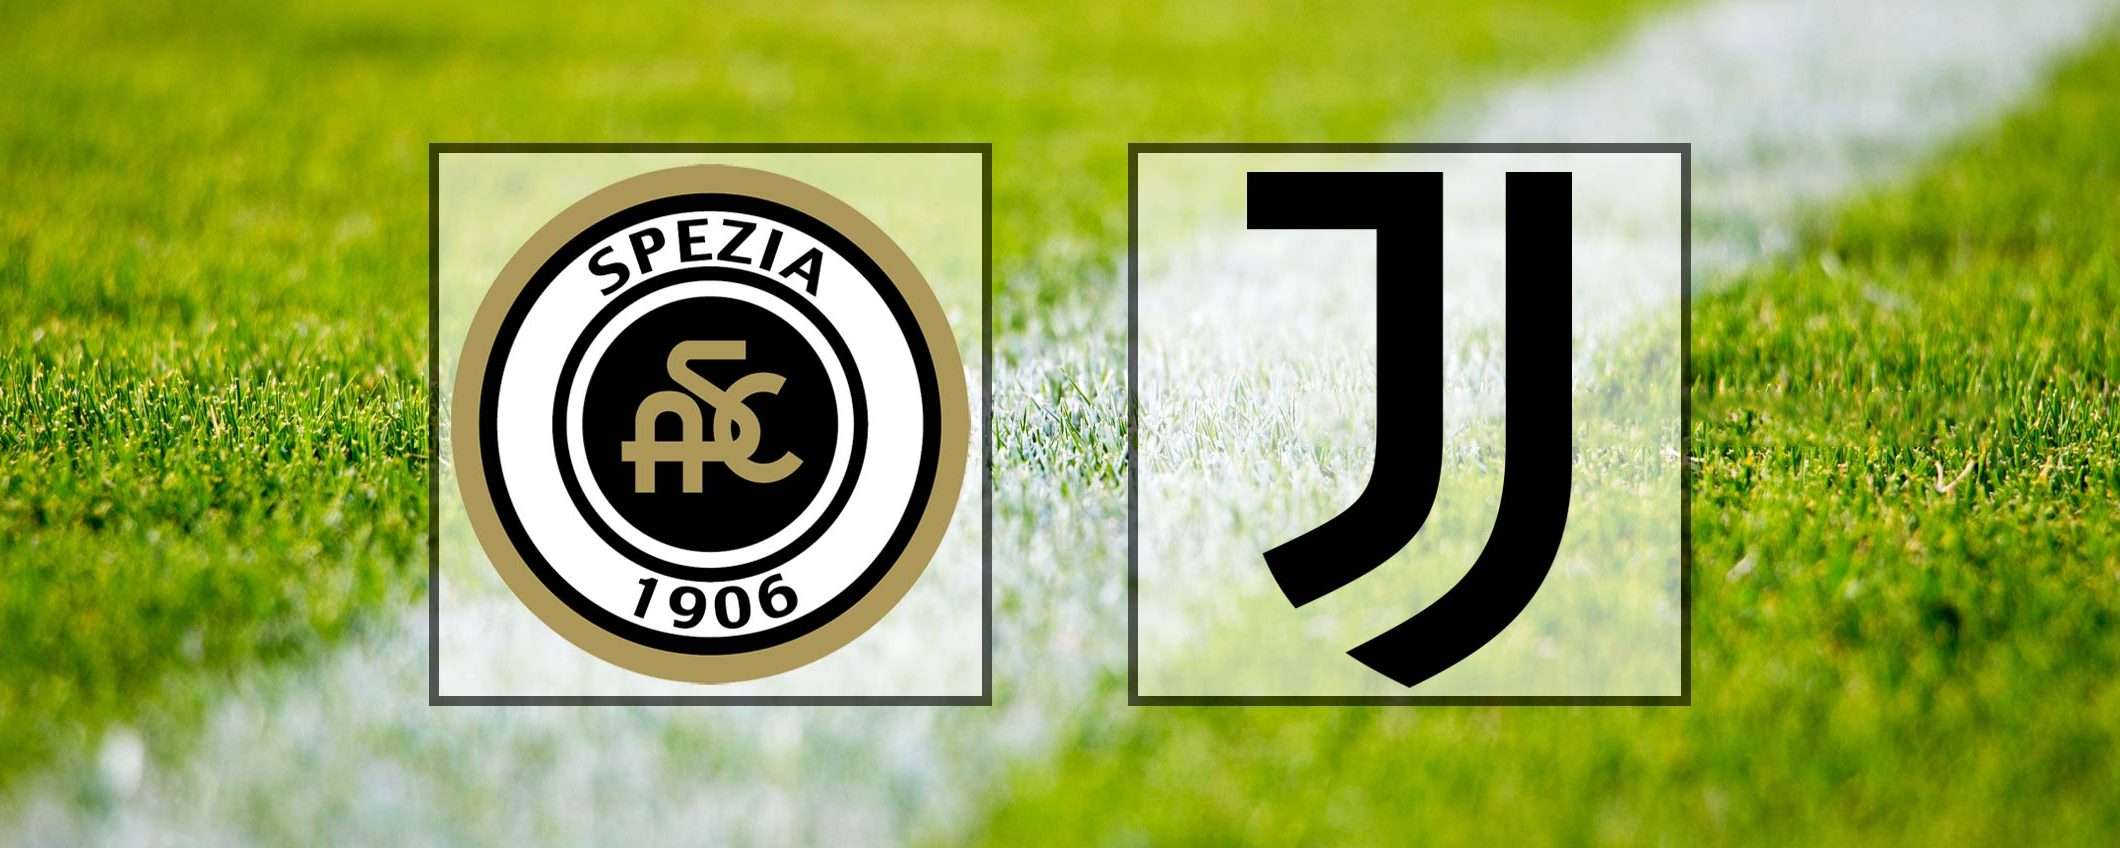 Come vedere Spezia-Juventus in streaming